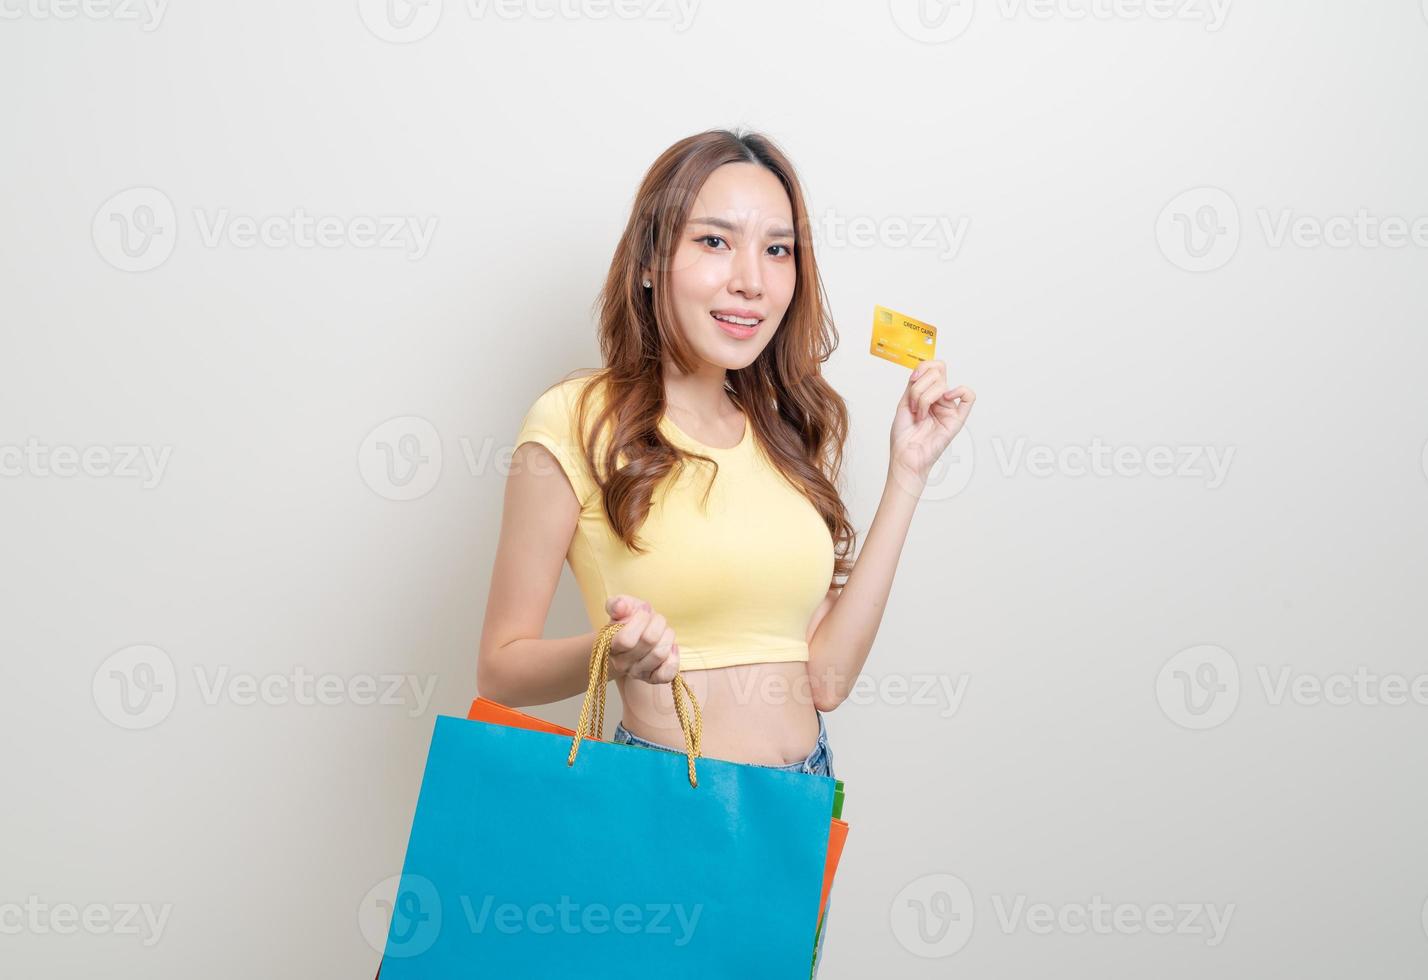 retrato de uma mulher bonita segurando uma sacola de compras e um cartão de crédito foto